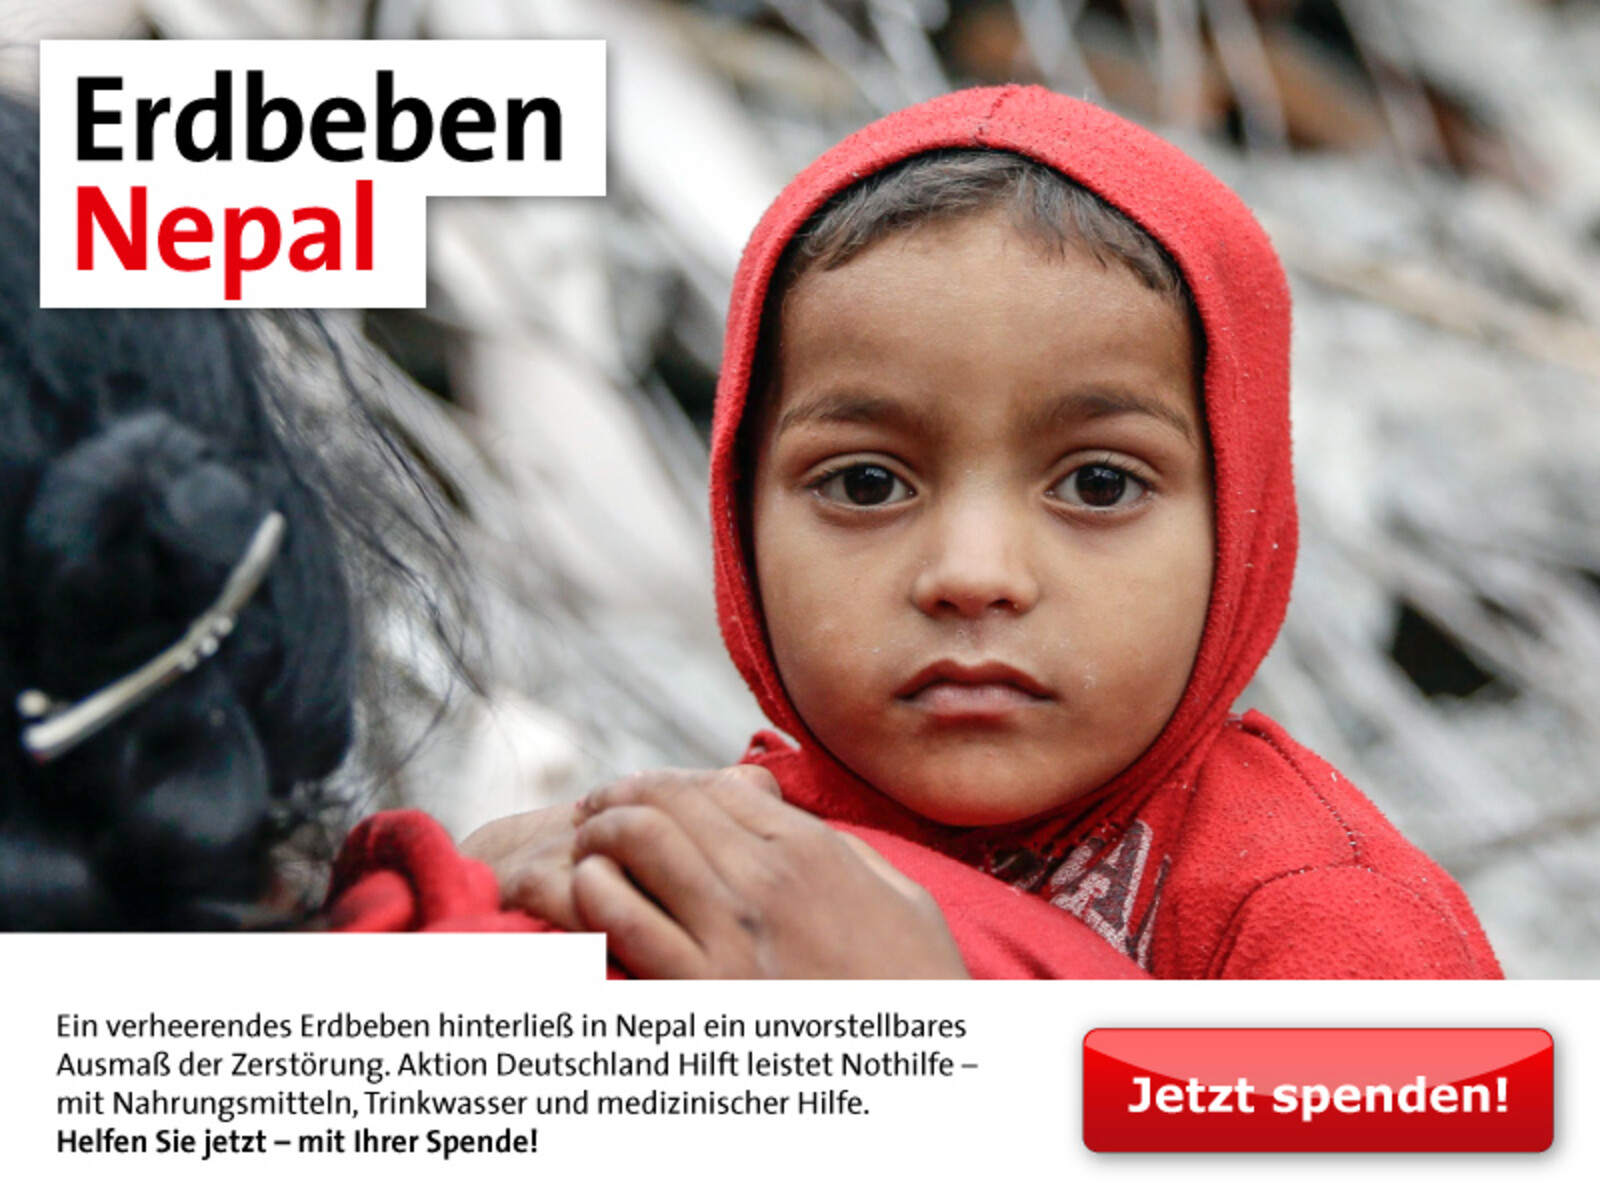 Ein verheerendes Erdbeben hinterließ in Nepal ein unvorstellbares Ausmaß der Zerstörung. Aktion Deutschland Hilft leistet Nothilfe – mit Nahrungsmitteln, Trinkwasser und medizinischer Hilfe. Helfen Sie jetzt – mit Ihrer Spende!